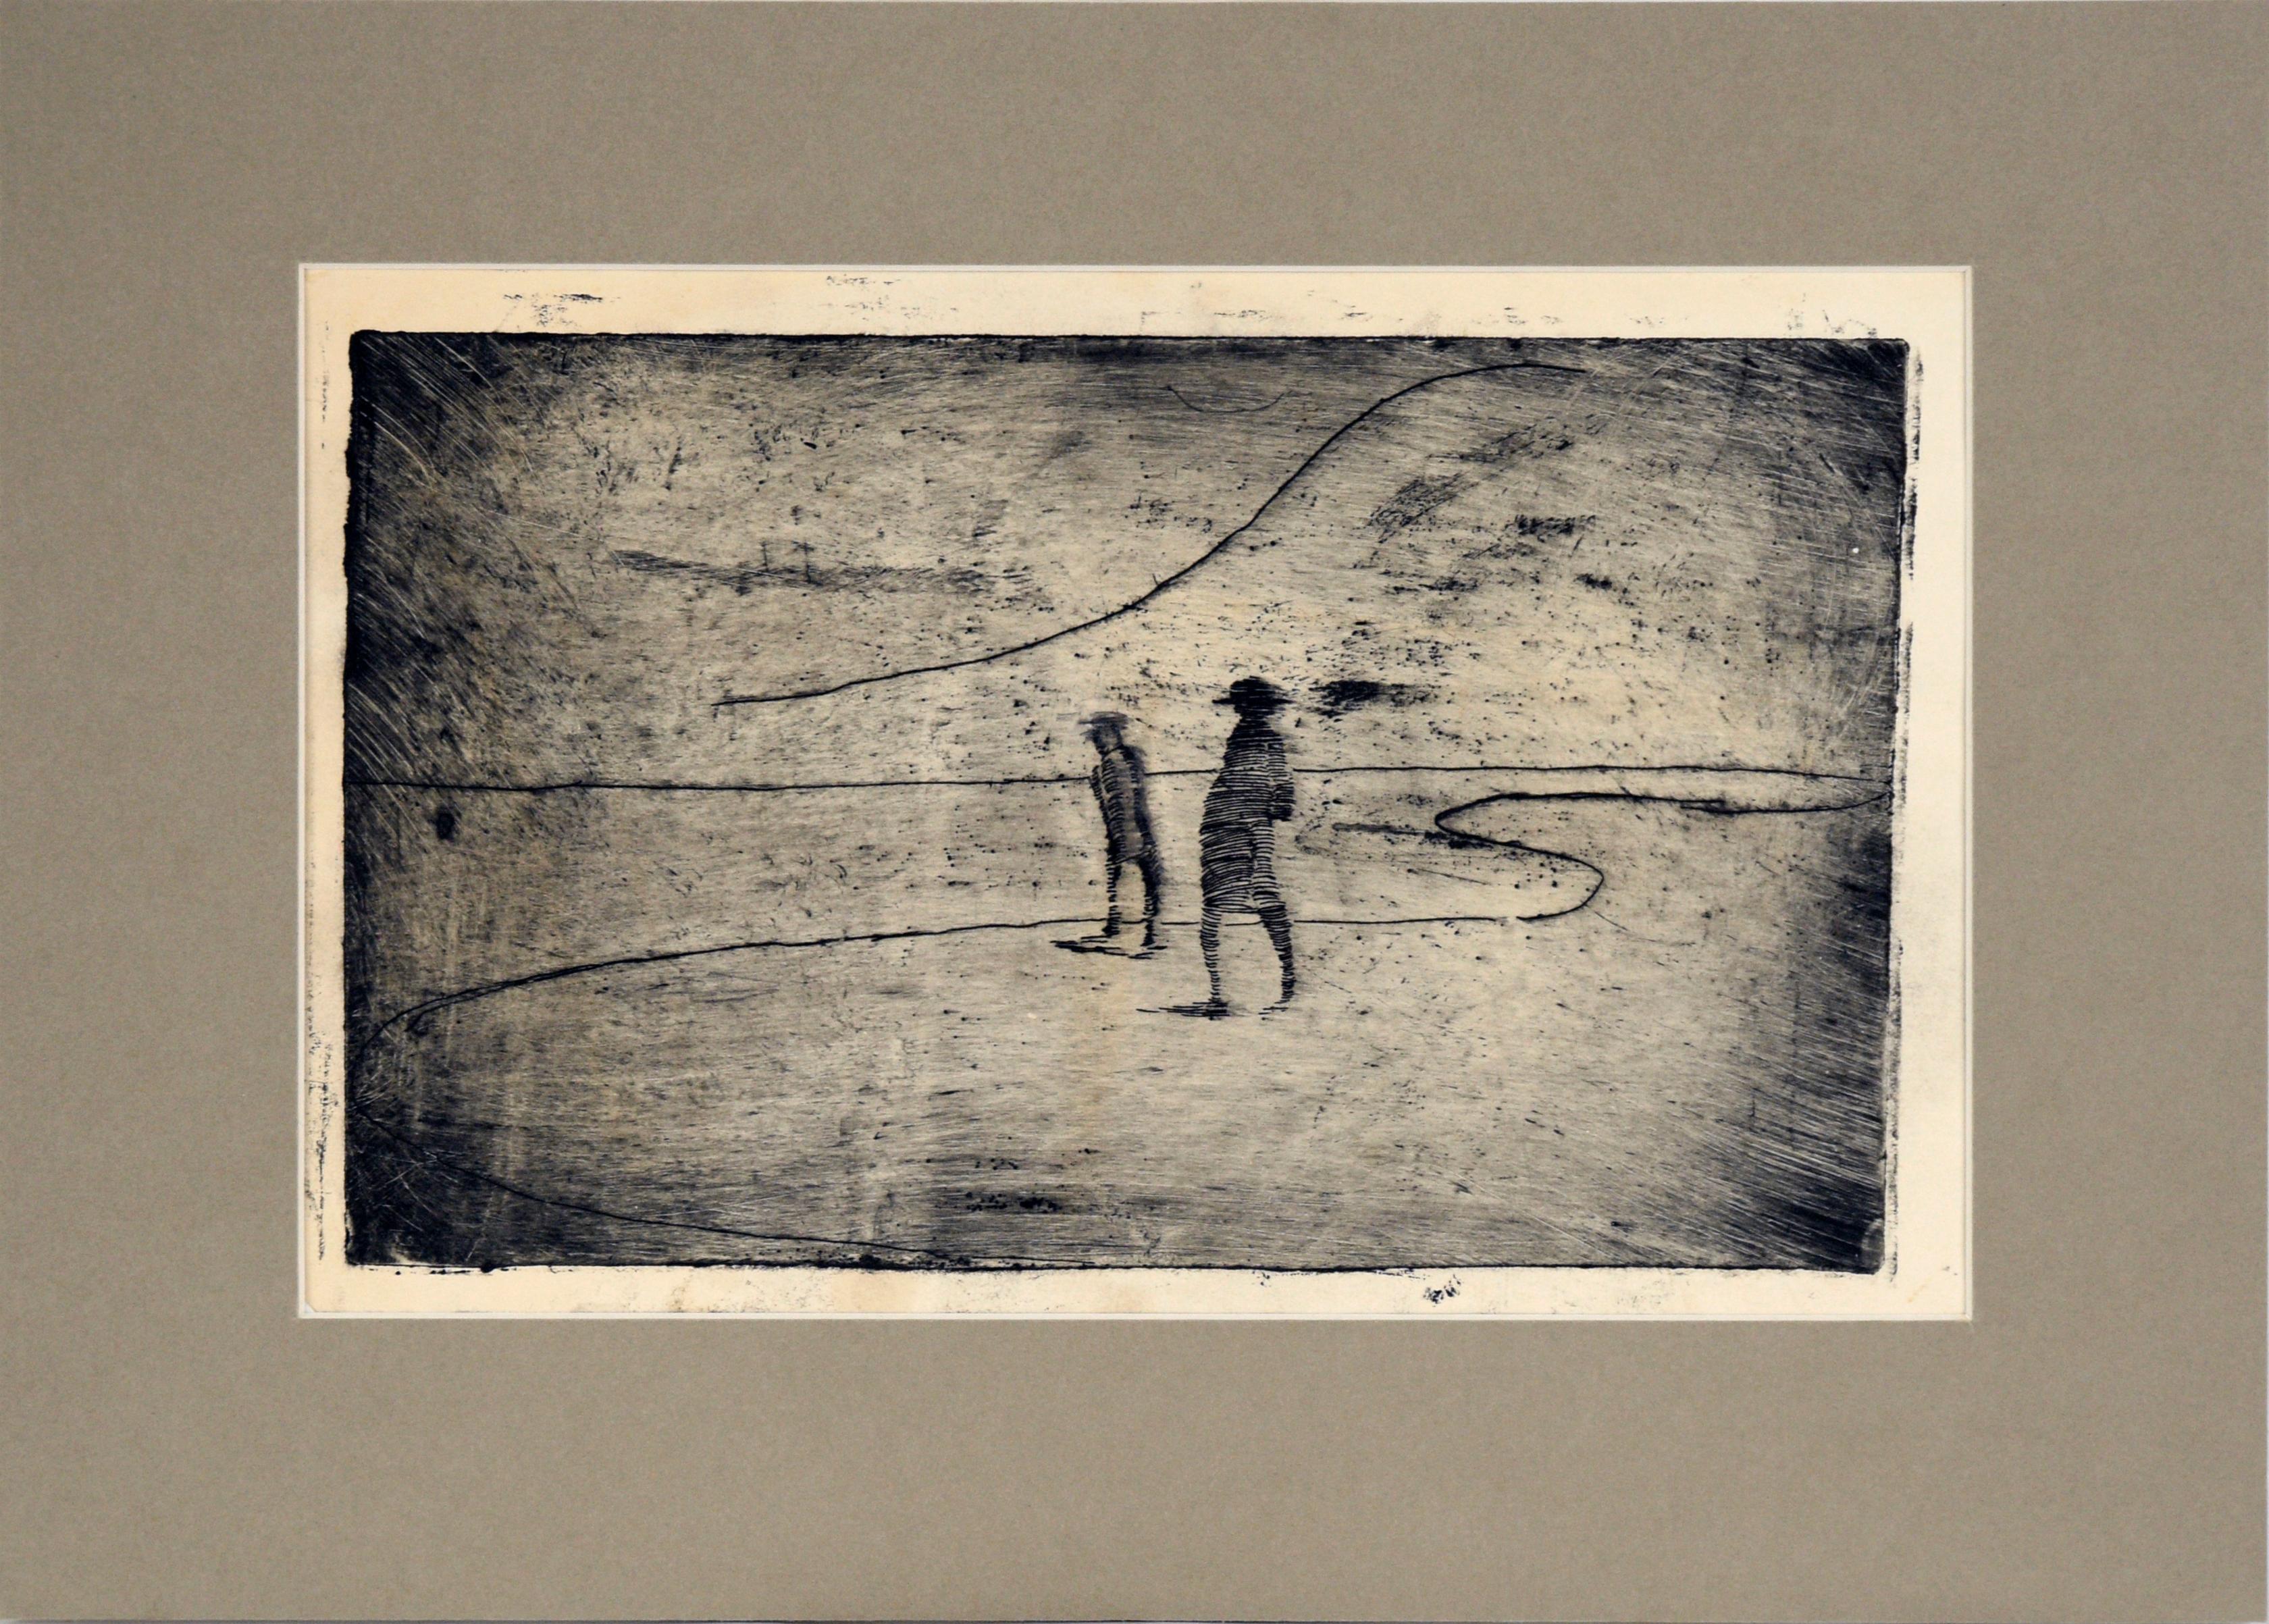 Minimalistische Landschaft mit zwei Figuren an der Shore – Kaltnadelradierung in Tinte auf Papier